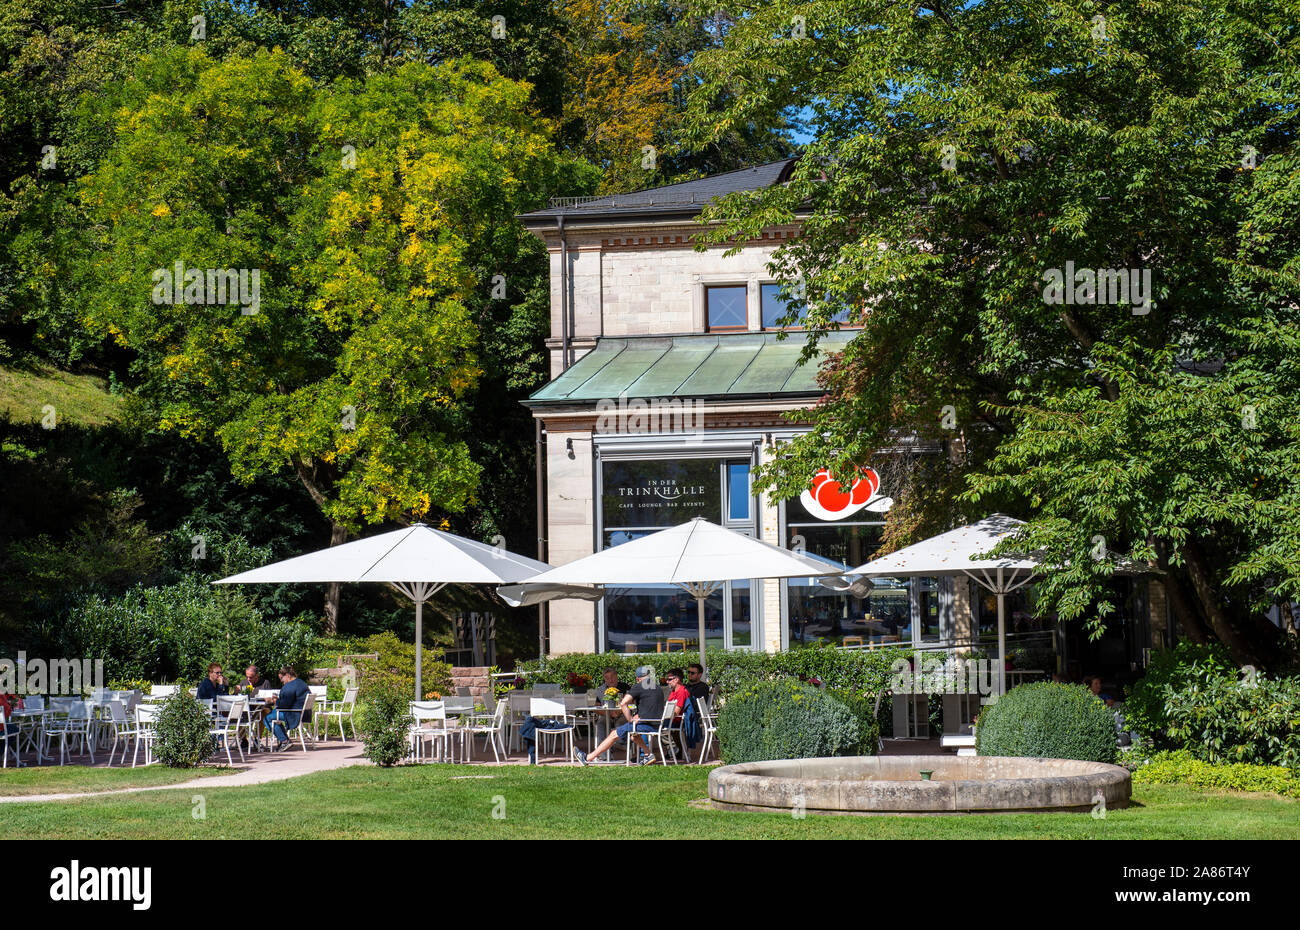 Trinkhalle Cafe dans les jardins au Kurhaus Baden Baden dans la Forêt Noire, au sud-ouest de l'Europe Allemagne Banque D'Images